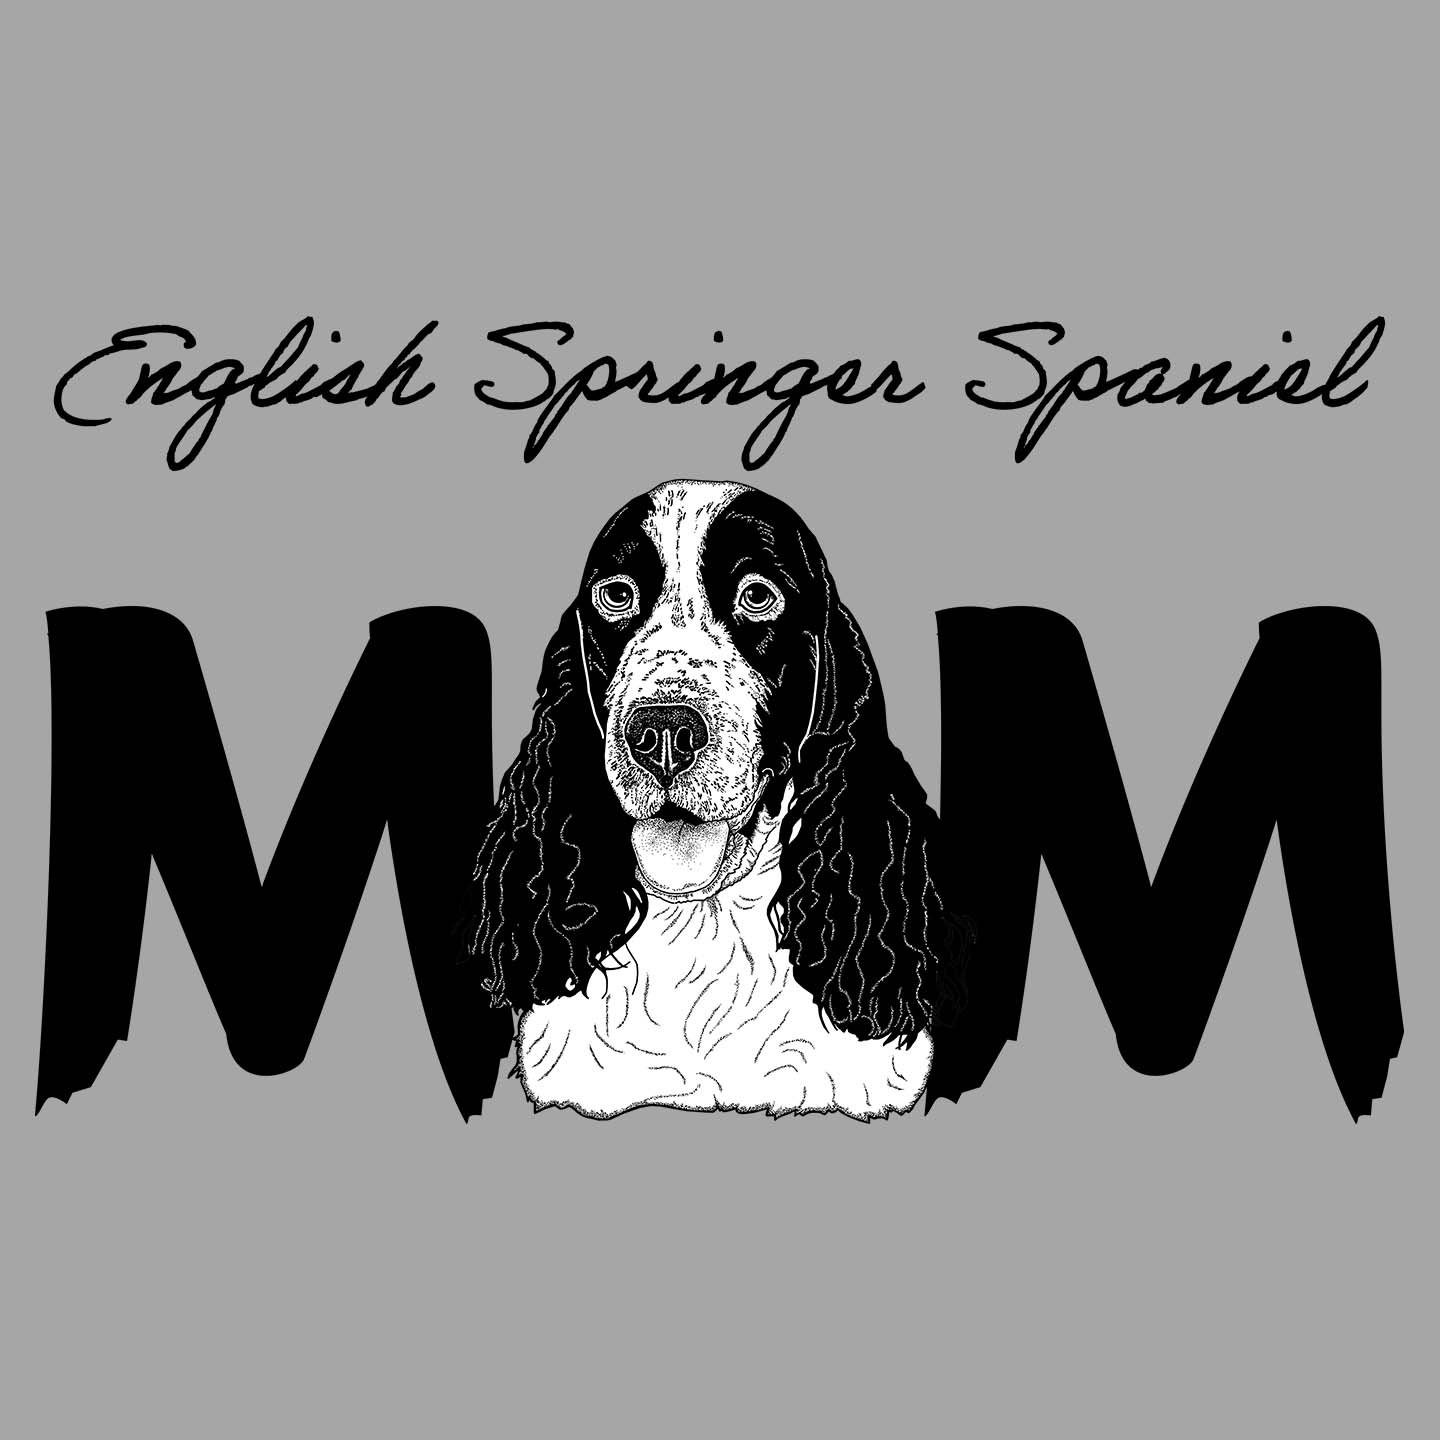 English Springer Spaniel Breed Mom - Women's V-Neck T-Shirt